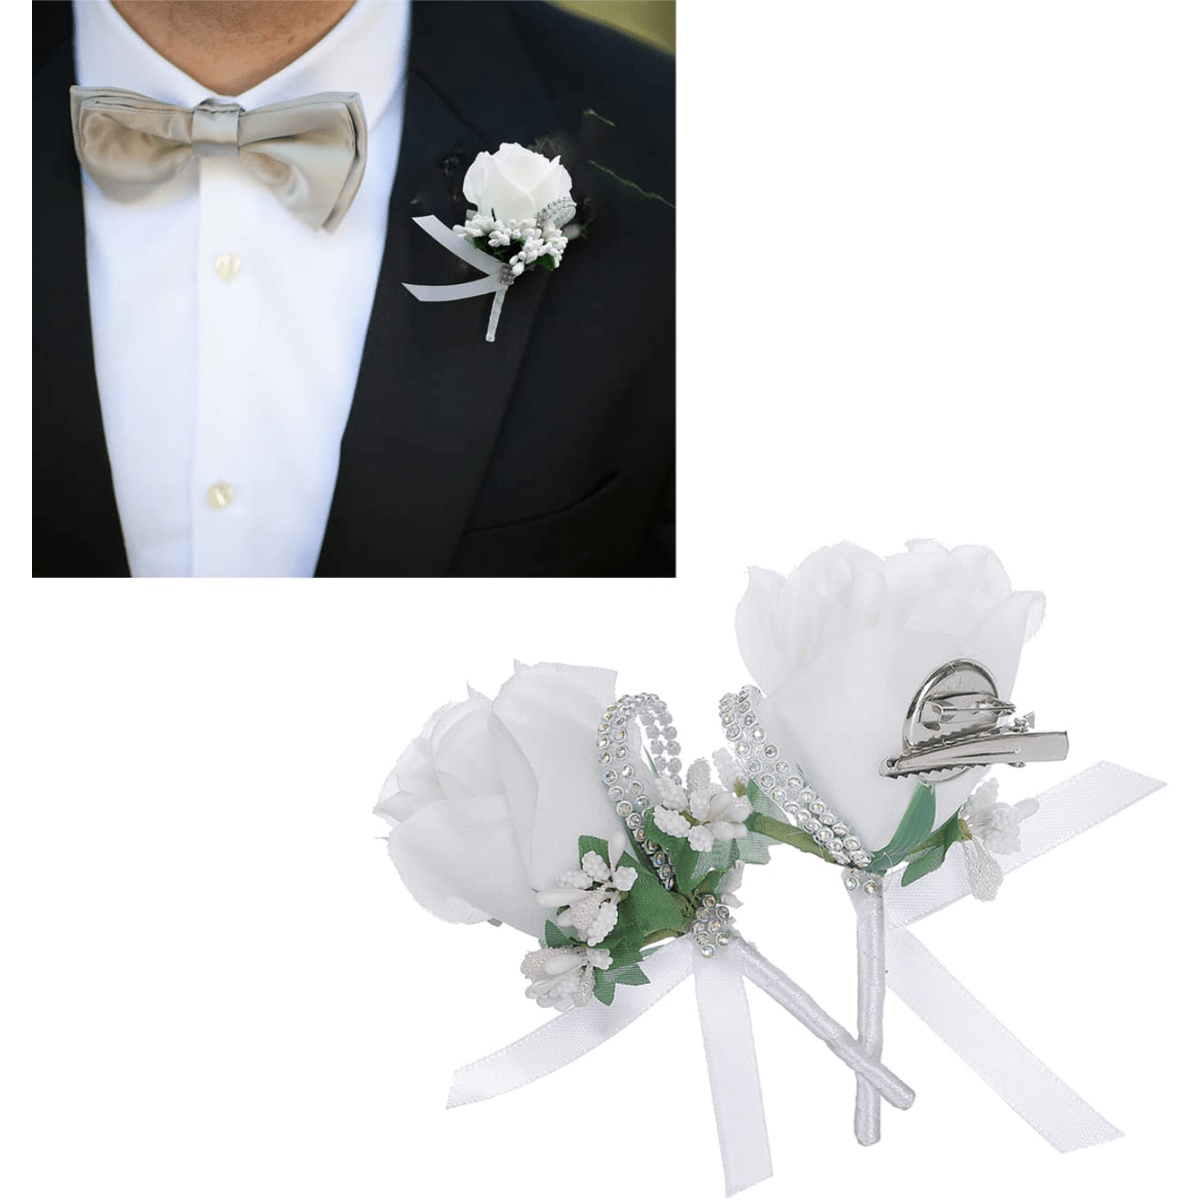 Burgundy Wedding Lapel Flower , Rose Lapel Pins Men , Mens Flower Lapel , Boutonniere  Pin. Gold Men Suit Buttonhole , Bulk Lapel Pin Set Of 